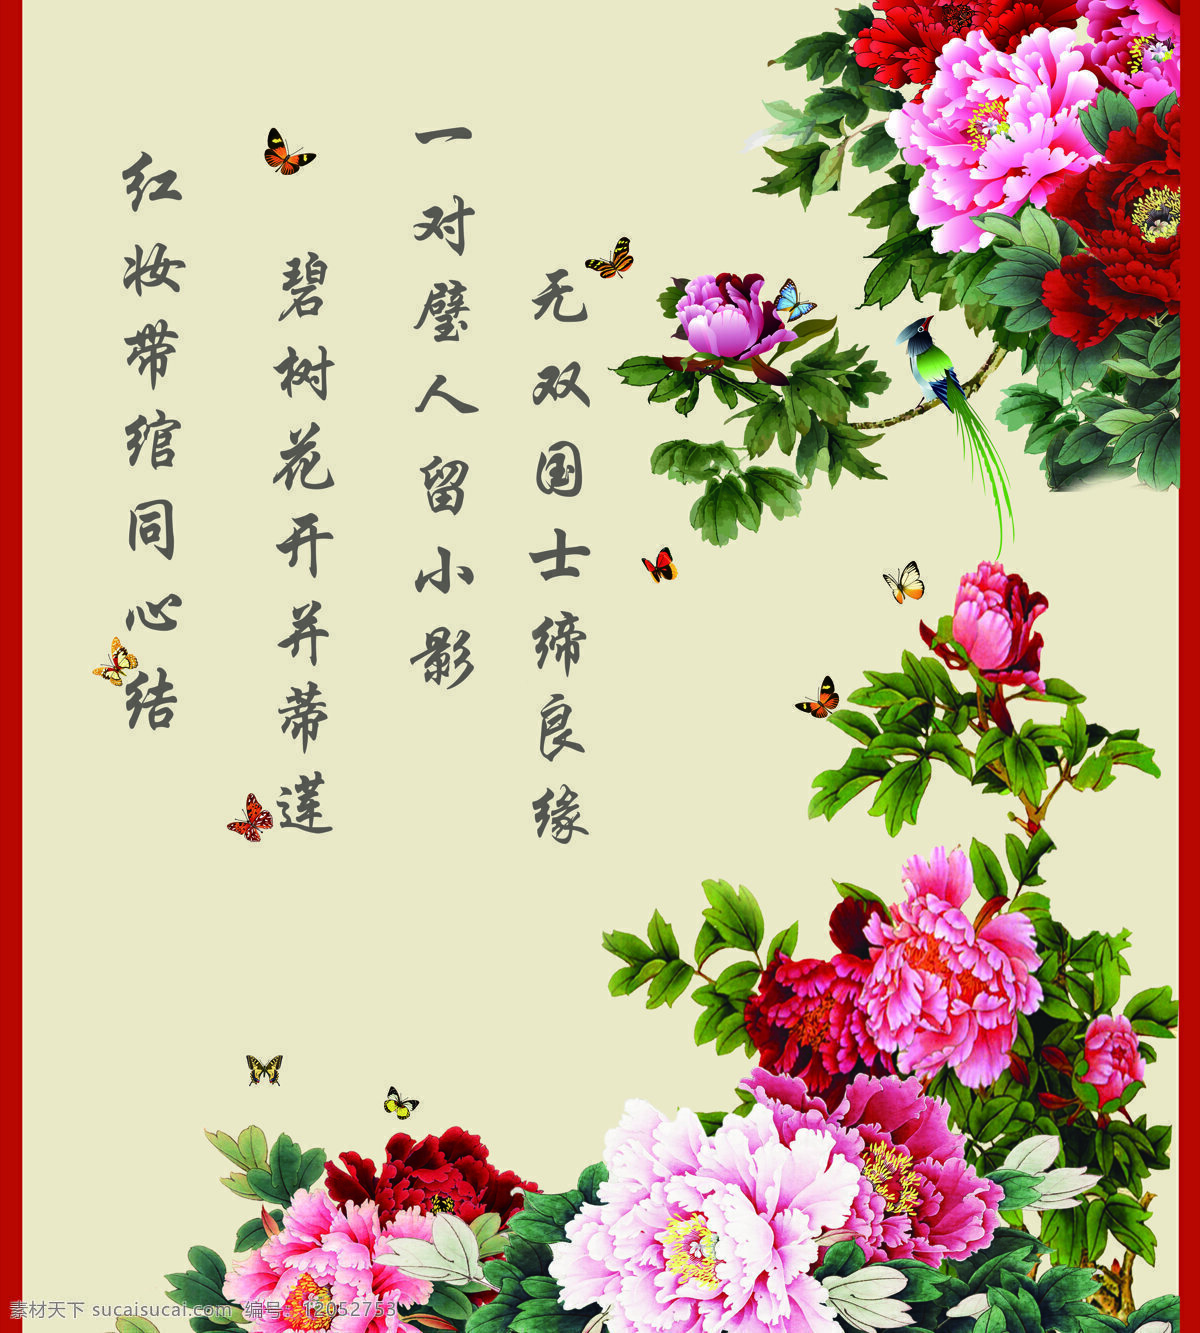 中国画图片 牡丹 诗词 字画 古诗 组图 展板模板